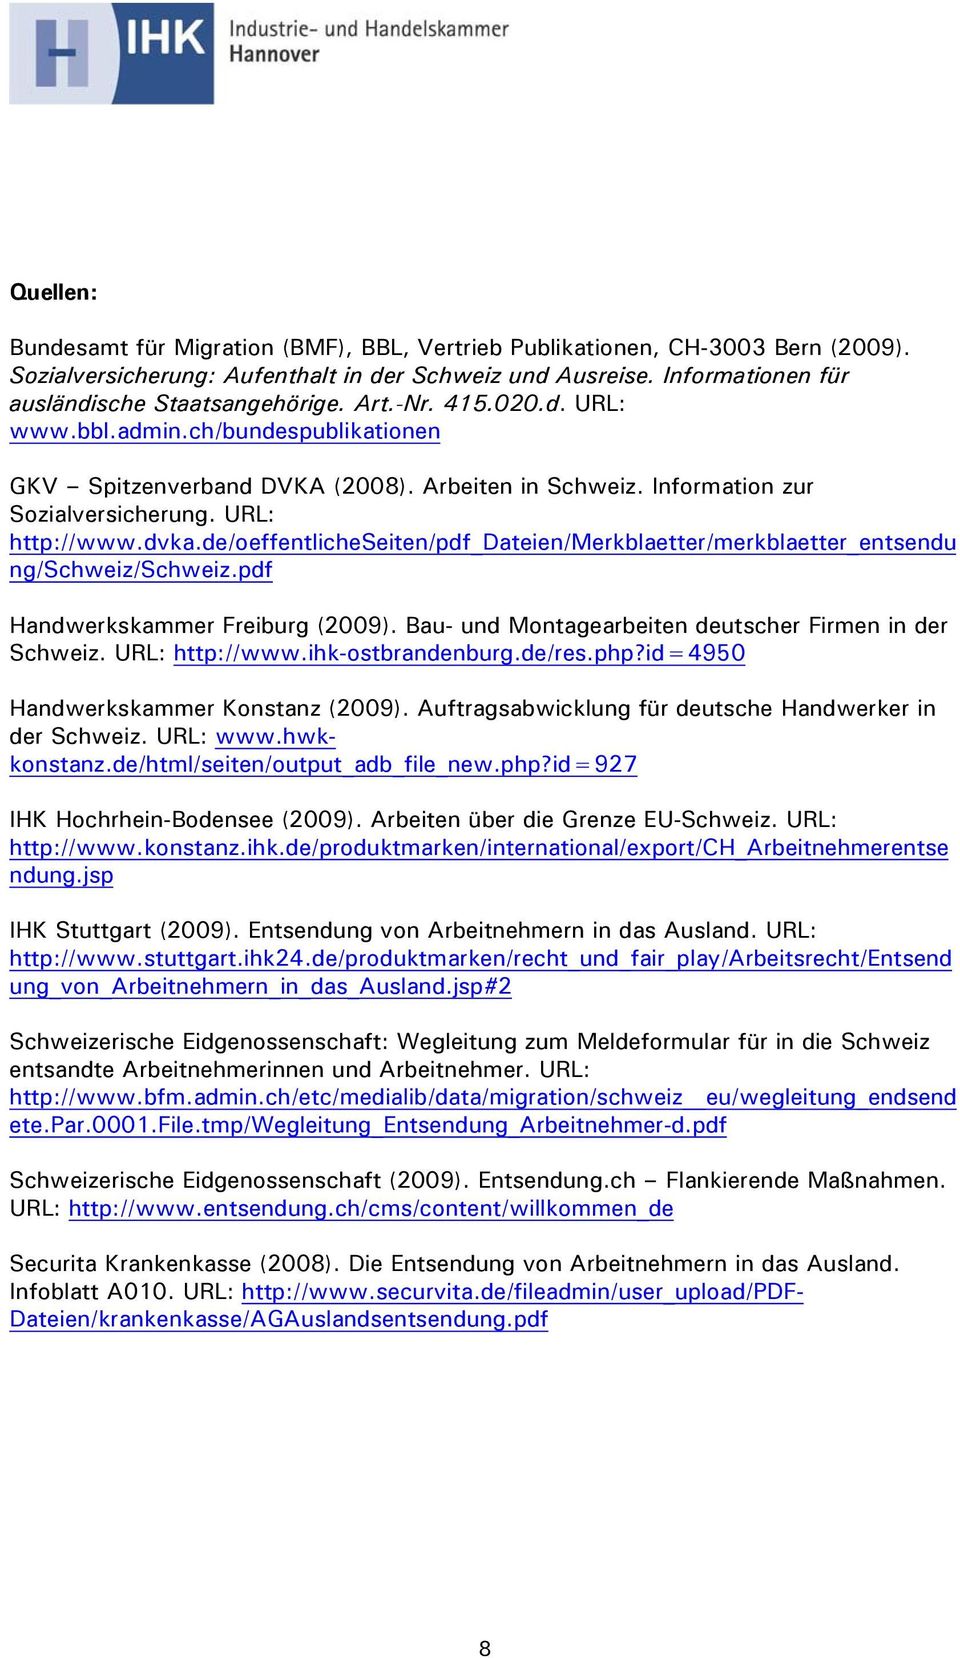 de/oeffentlicheseiten/pdf_dateien/merkblaetter/merkblaetter_entsendu ng/schweiz/schweiz.pdf Handwerkskammer Freiburg (2009). Bau- und Montagearbeiten deutscher Firmen in der Schweiz. URL: http://www.